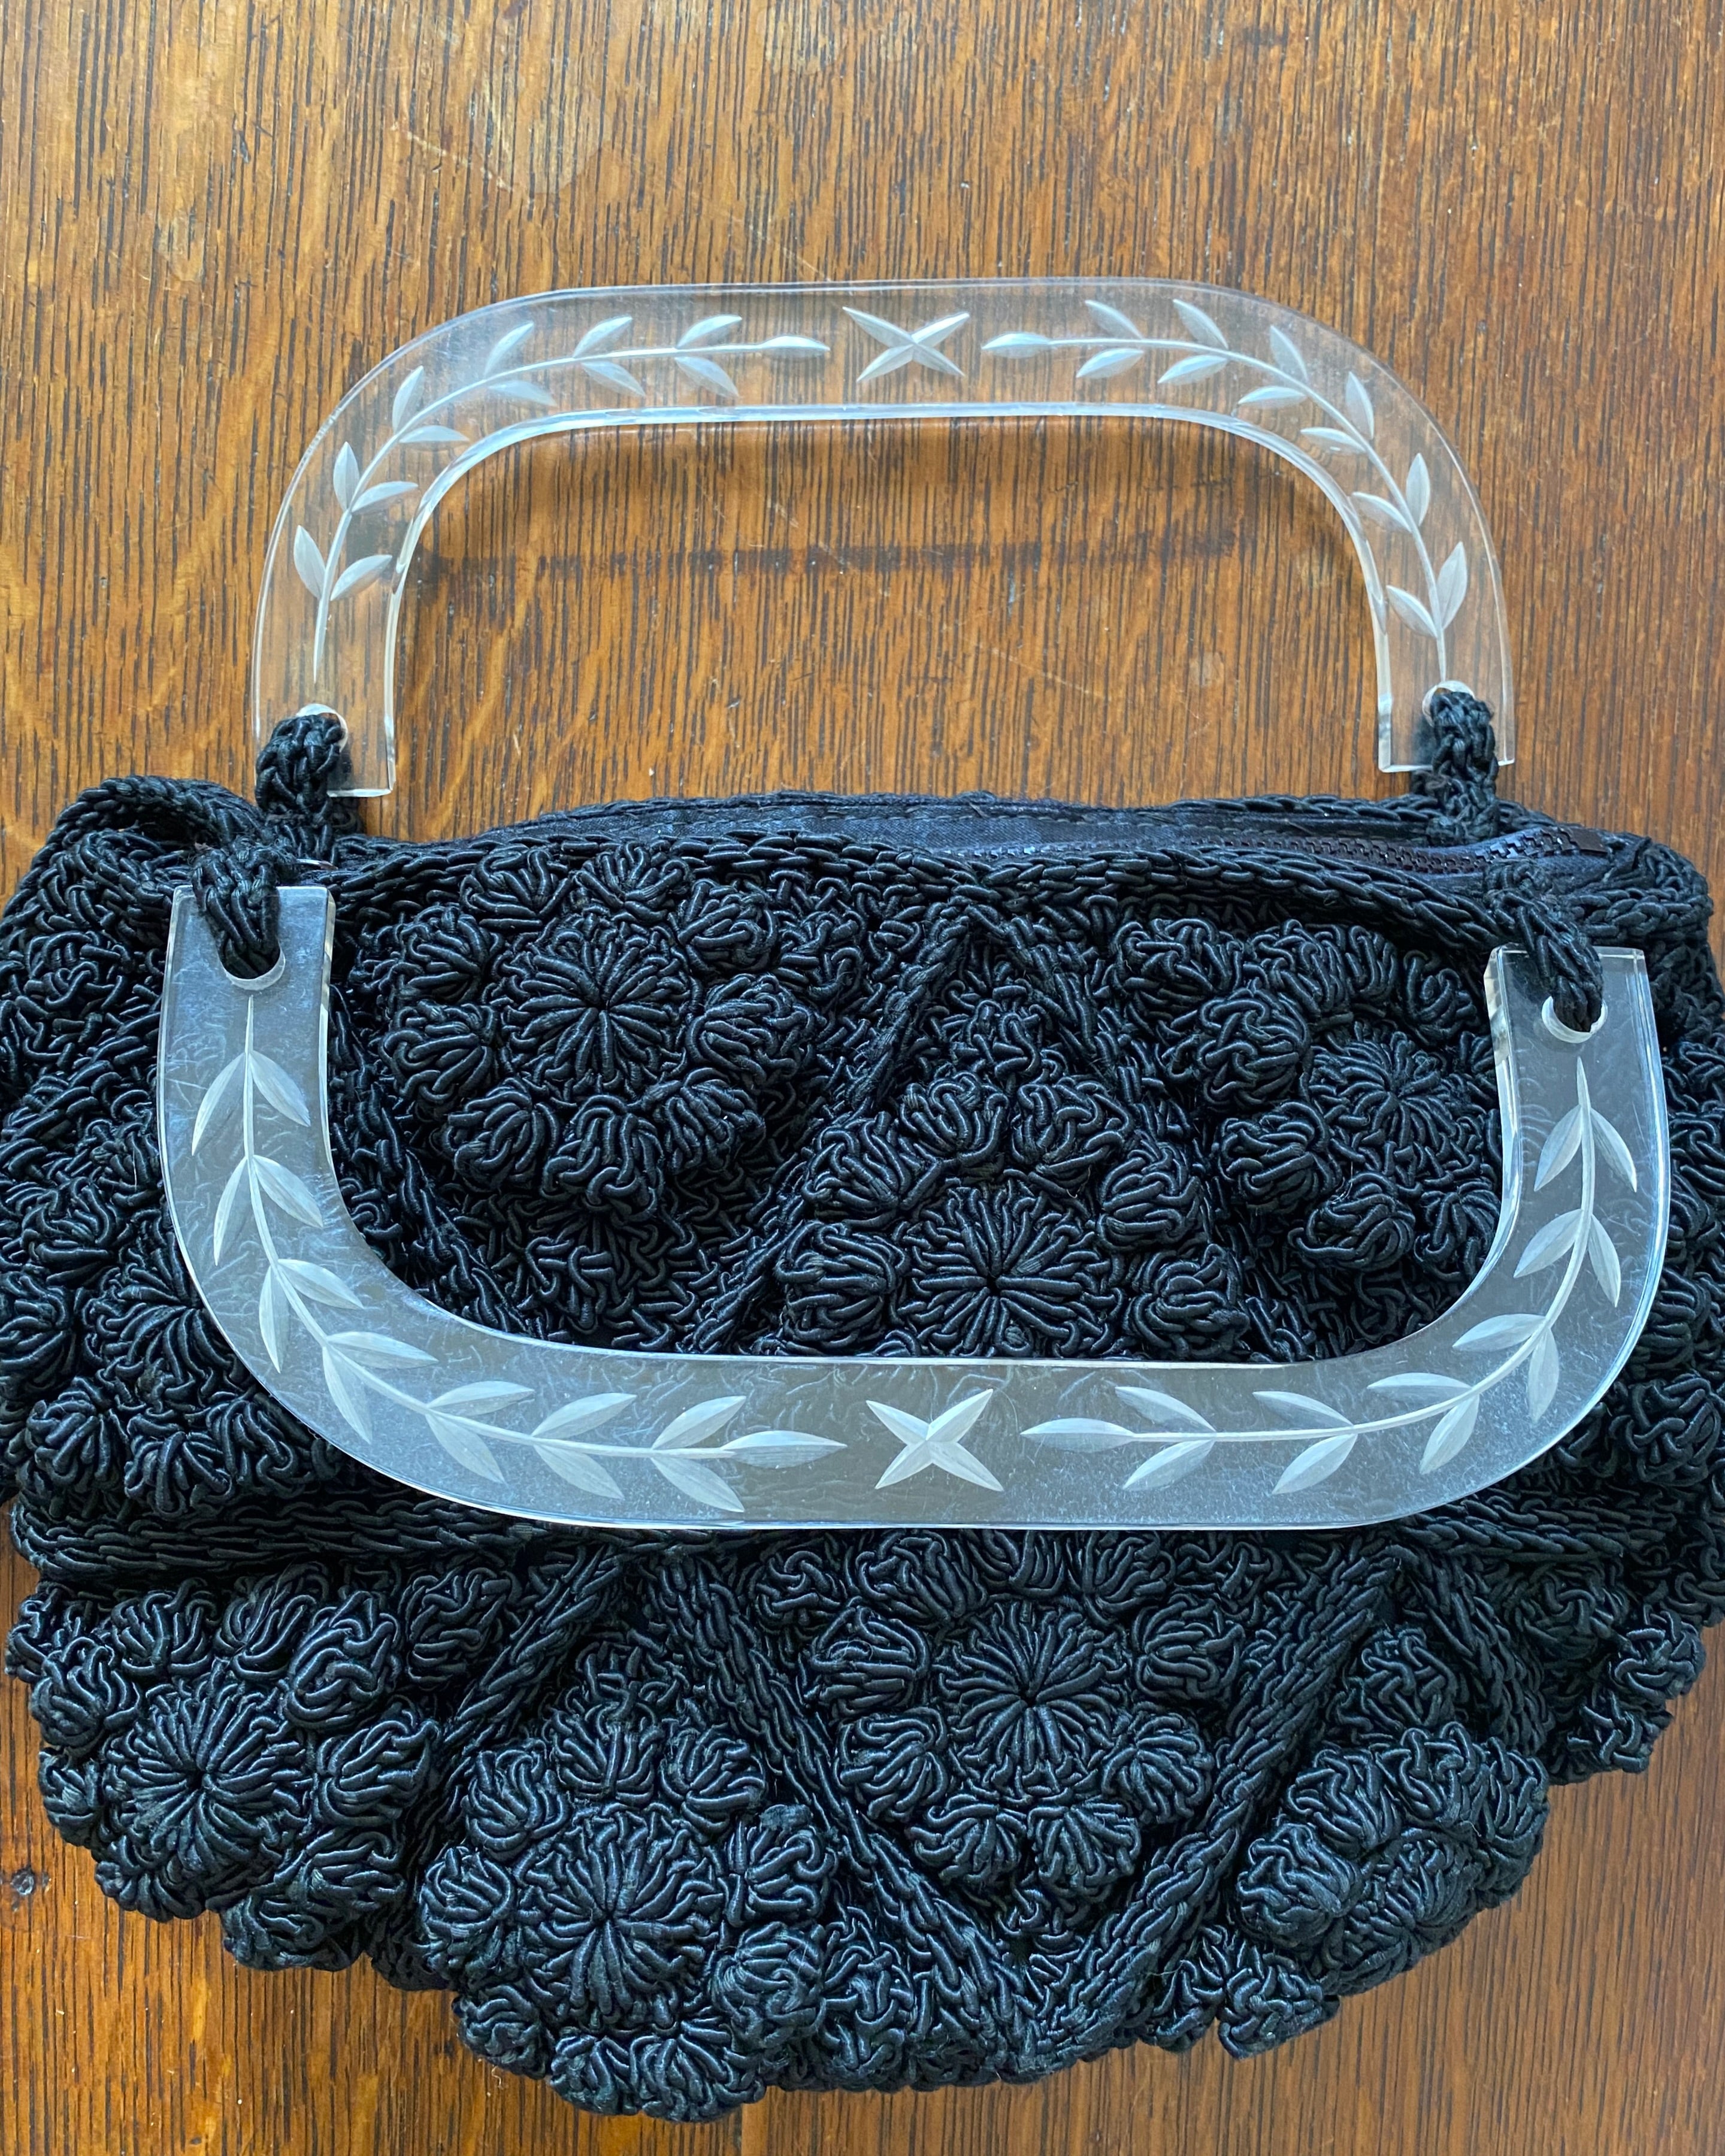 Vintage 1940s 1950s Black Crochet Bobble Stitch Purse Hand Bag with Lucite Handle